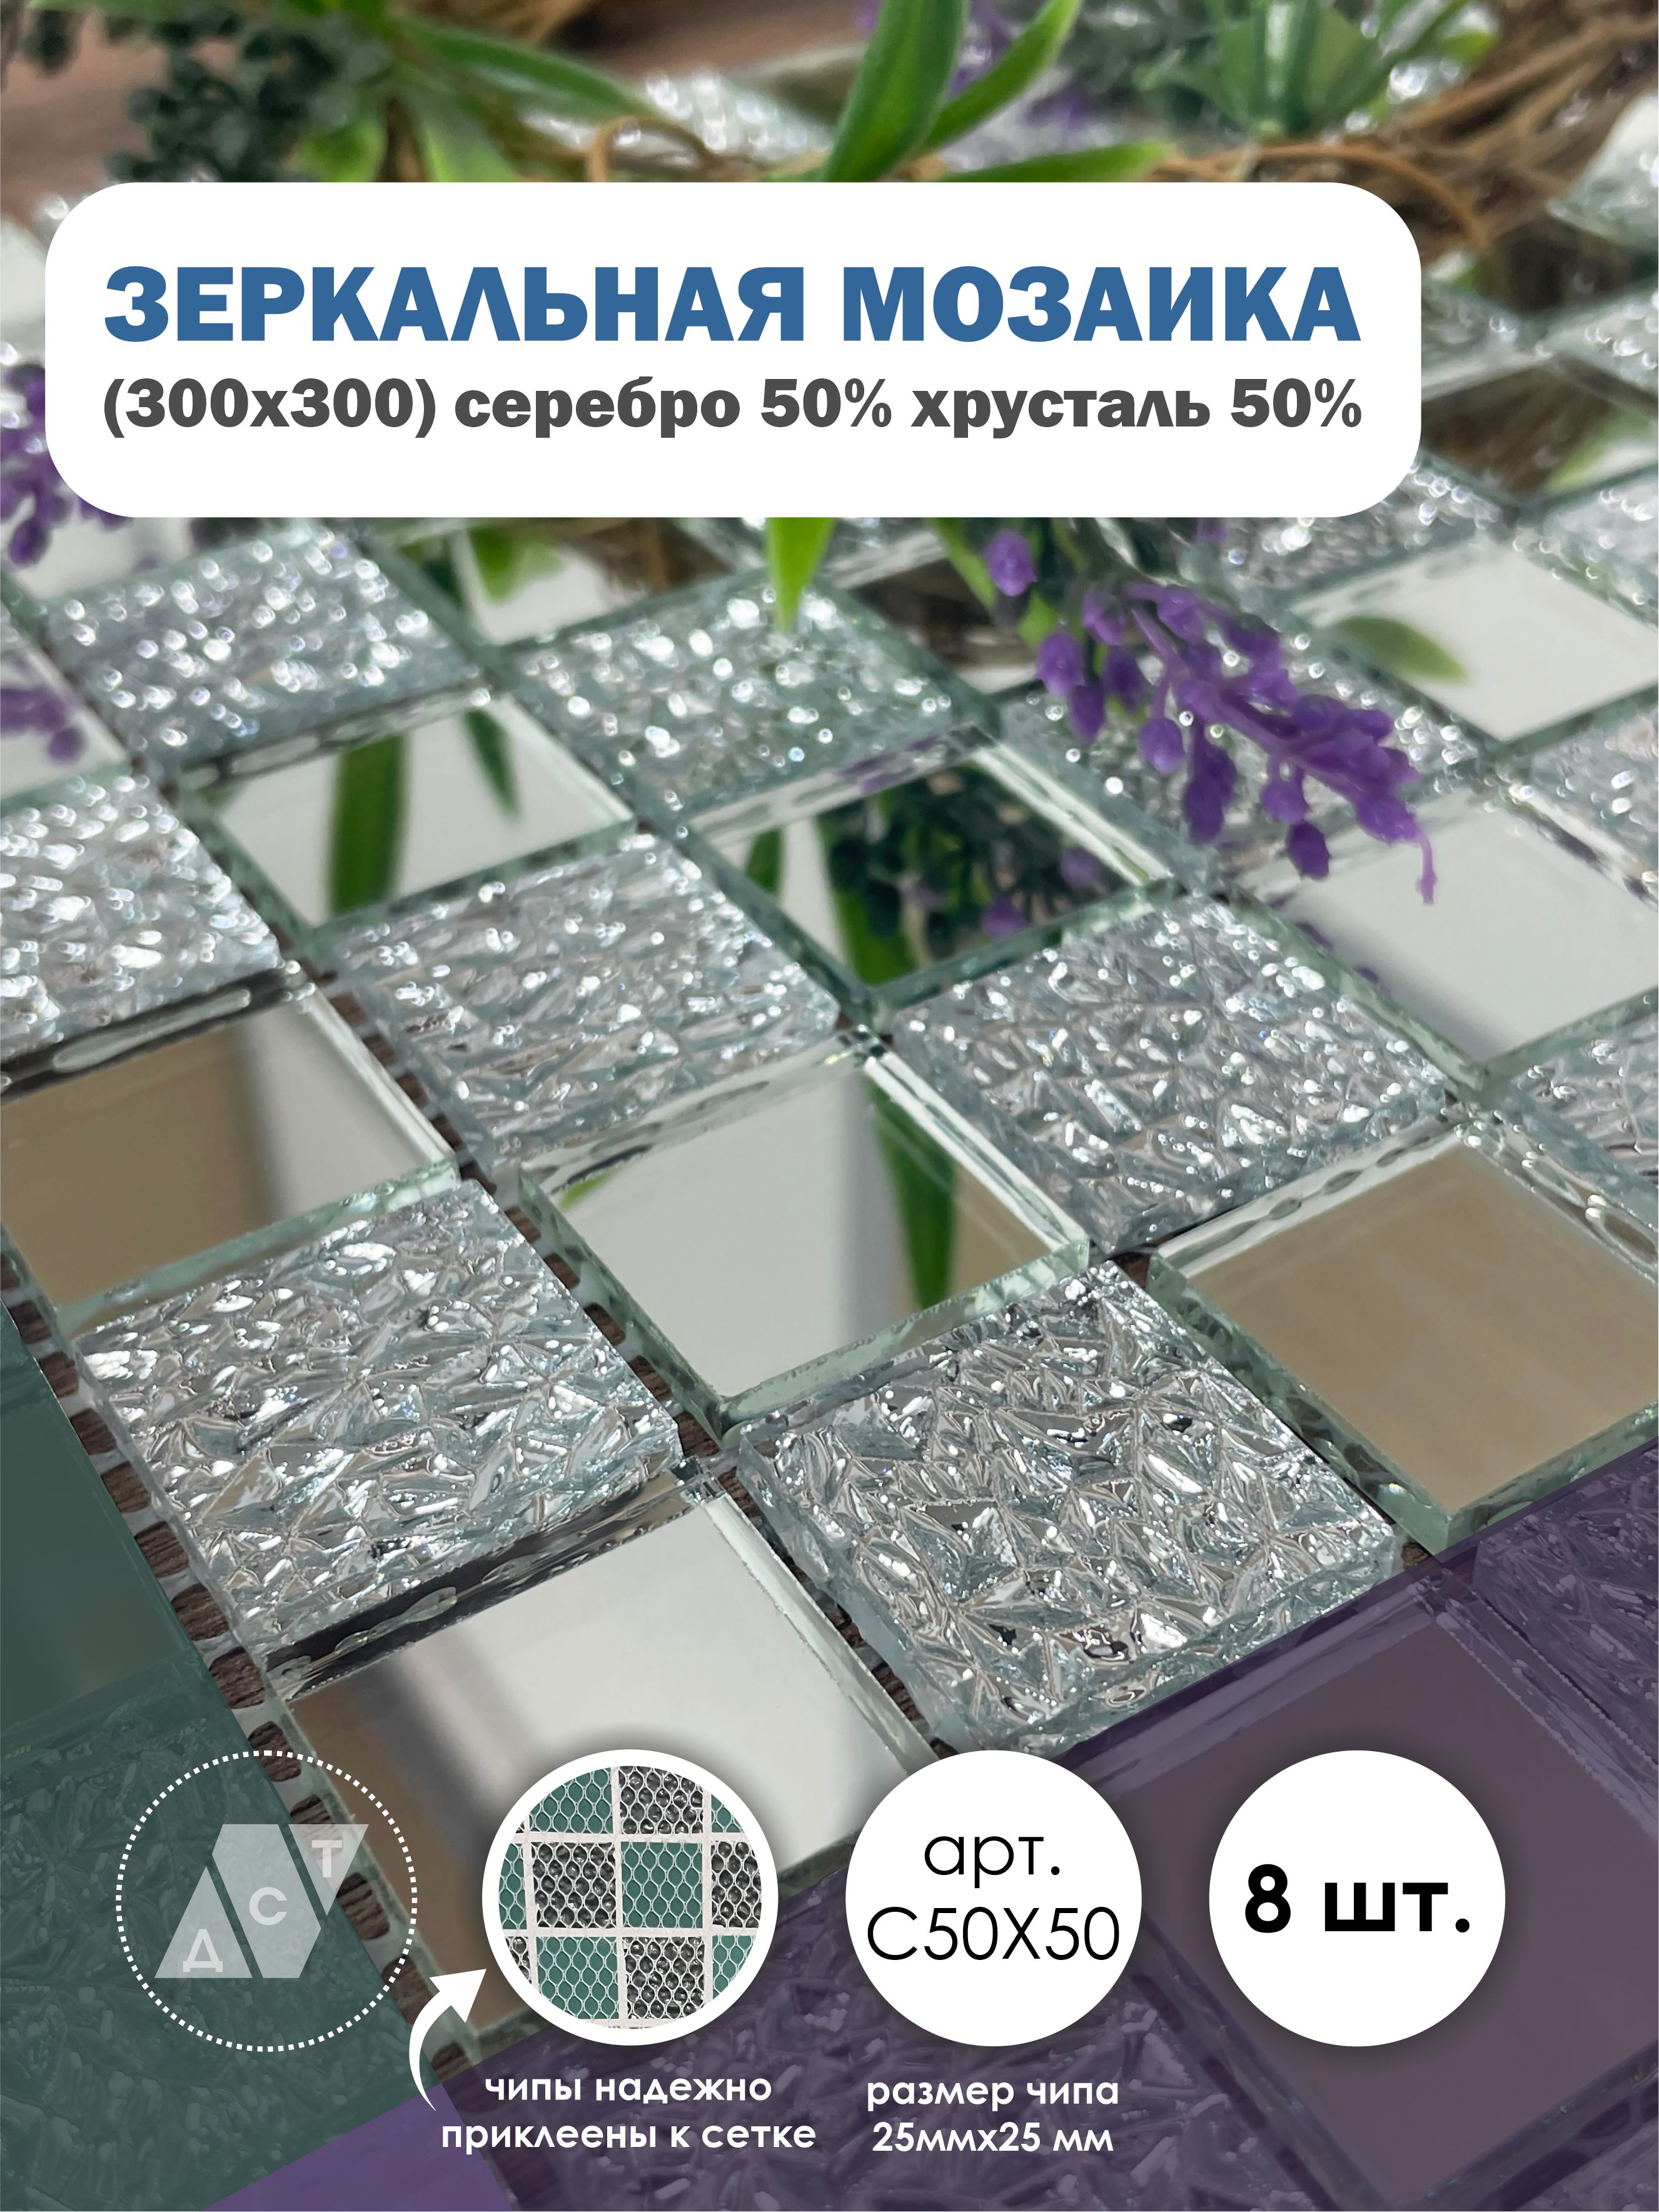 фото Зеркальная мозаика на сетке, дст, 30х30 см, серебро 50% + хрусталь 50%, (8 листов) дом стекольных технологий